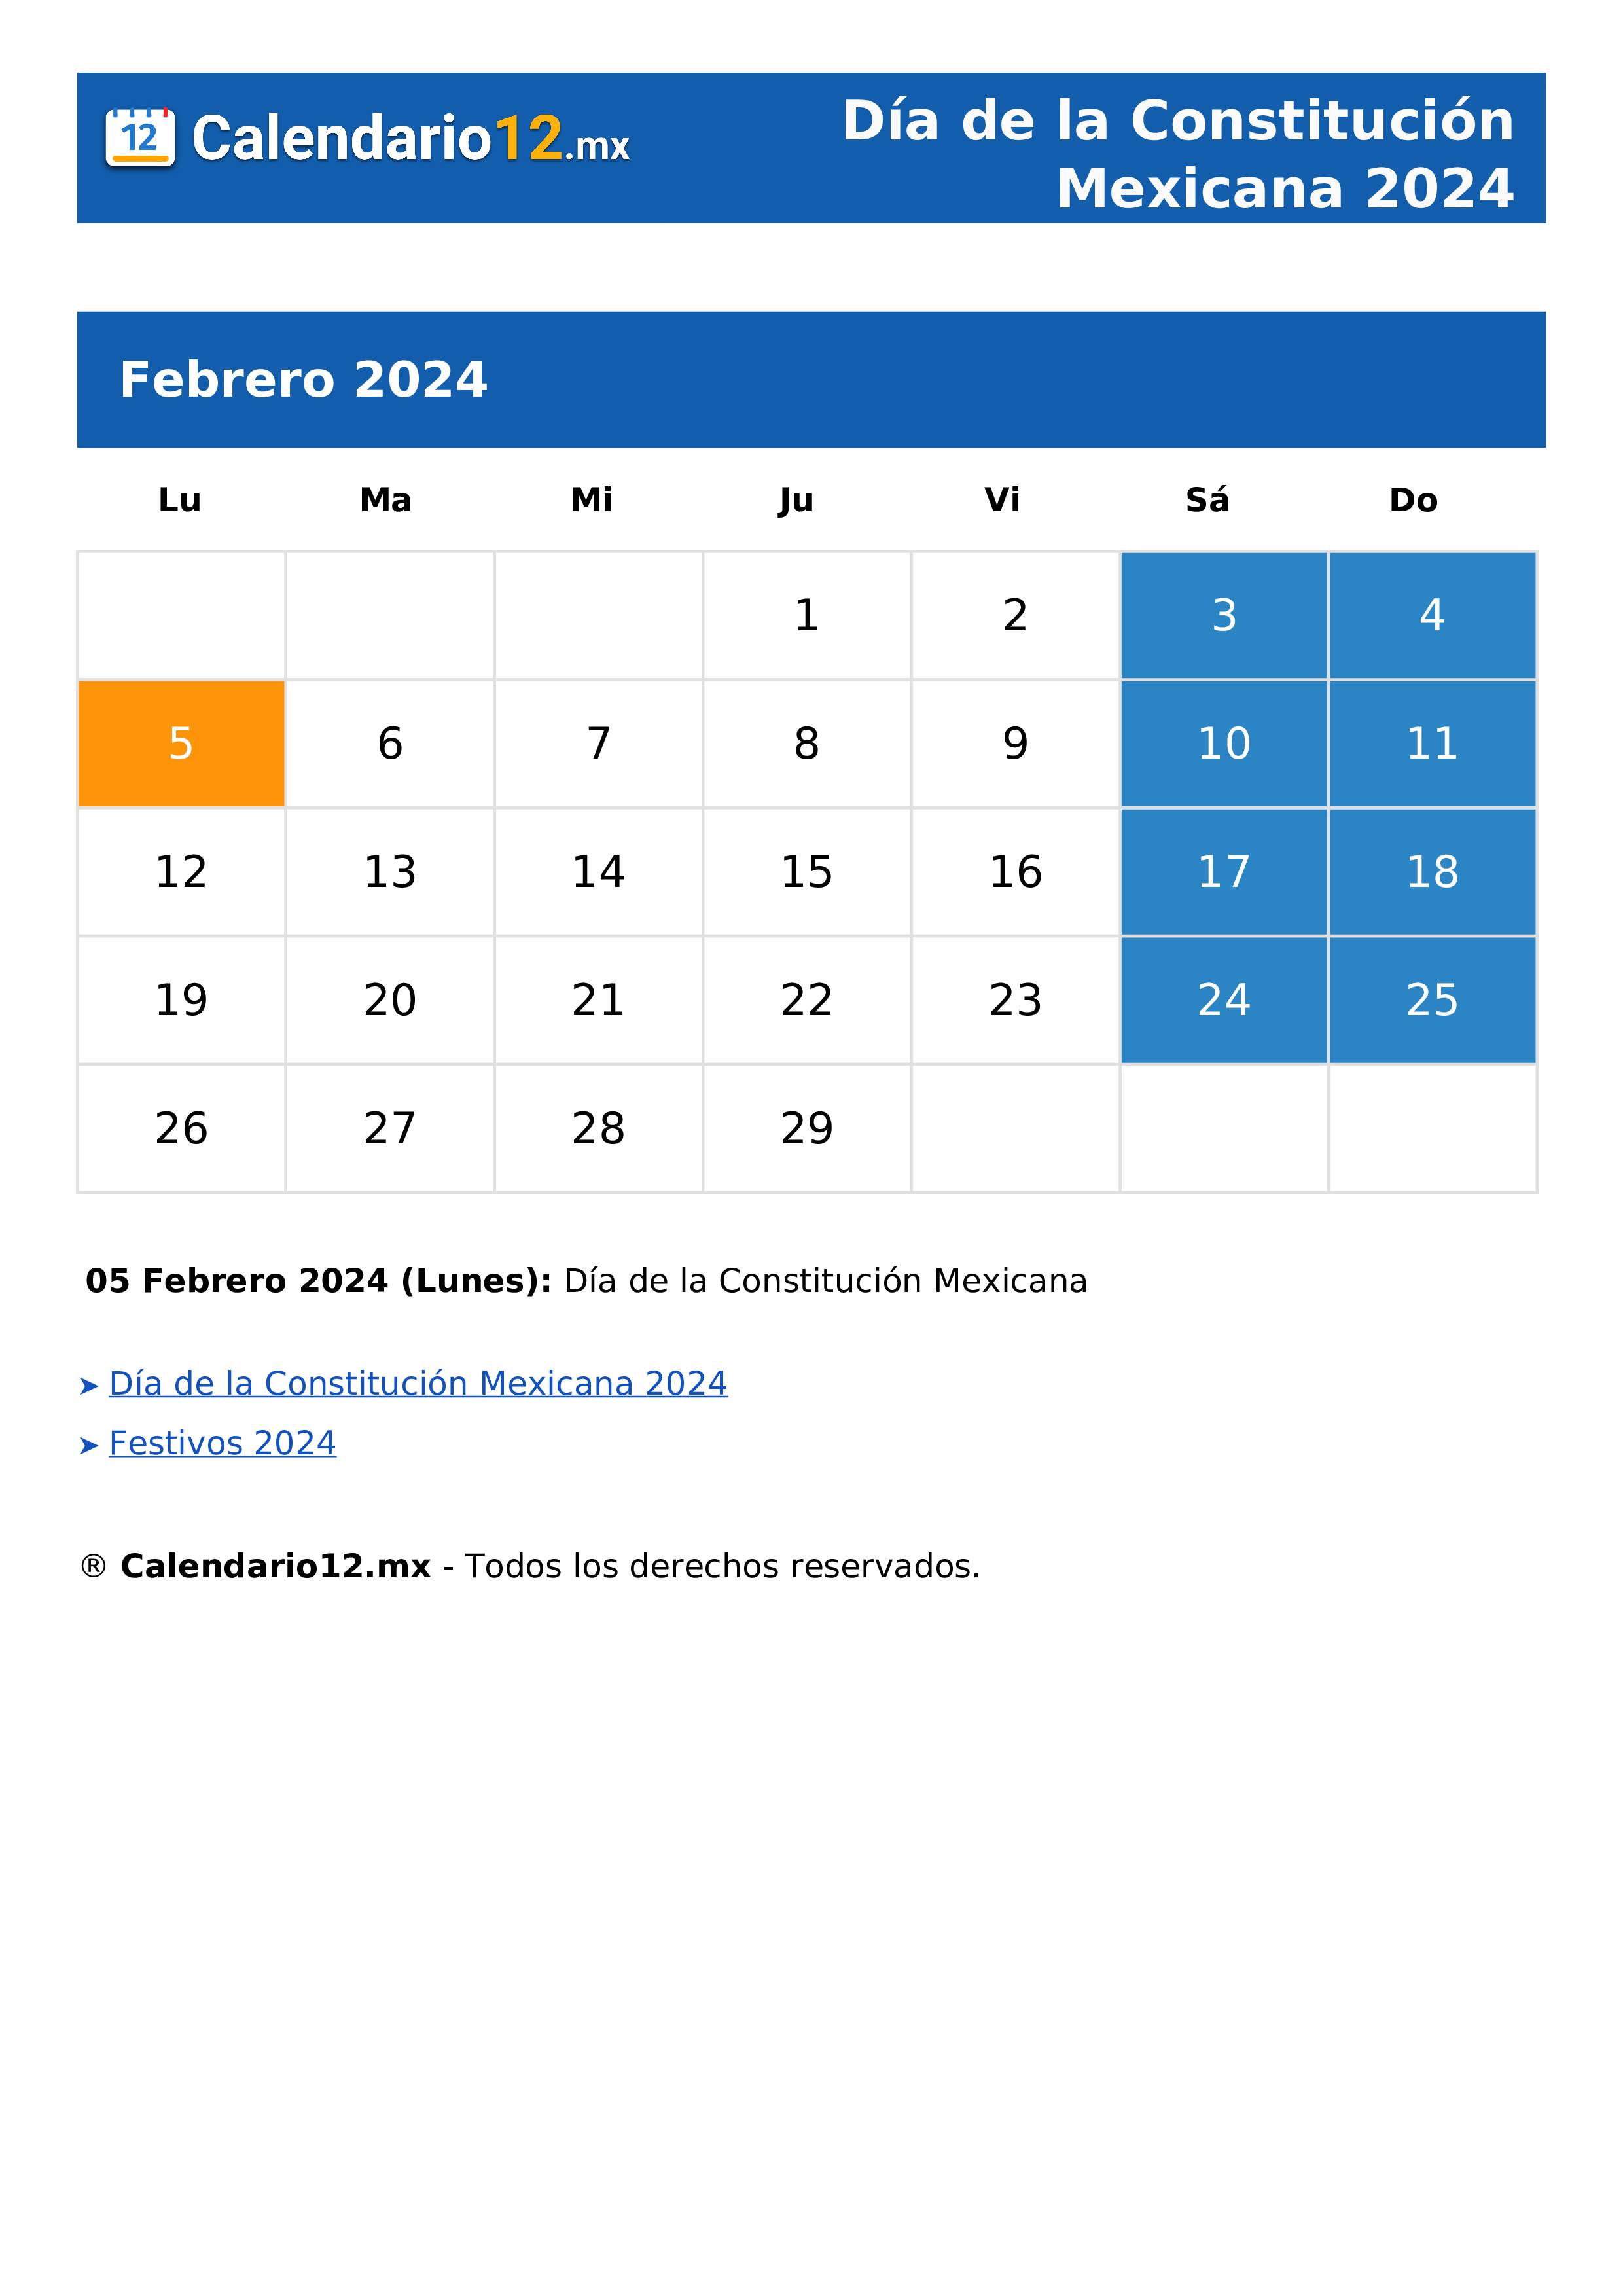 Día de la Constitución Mexicana 2024